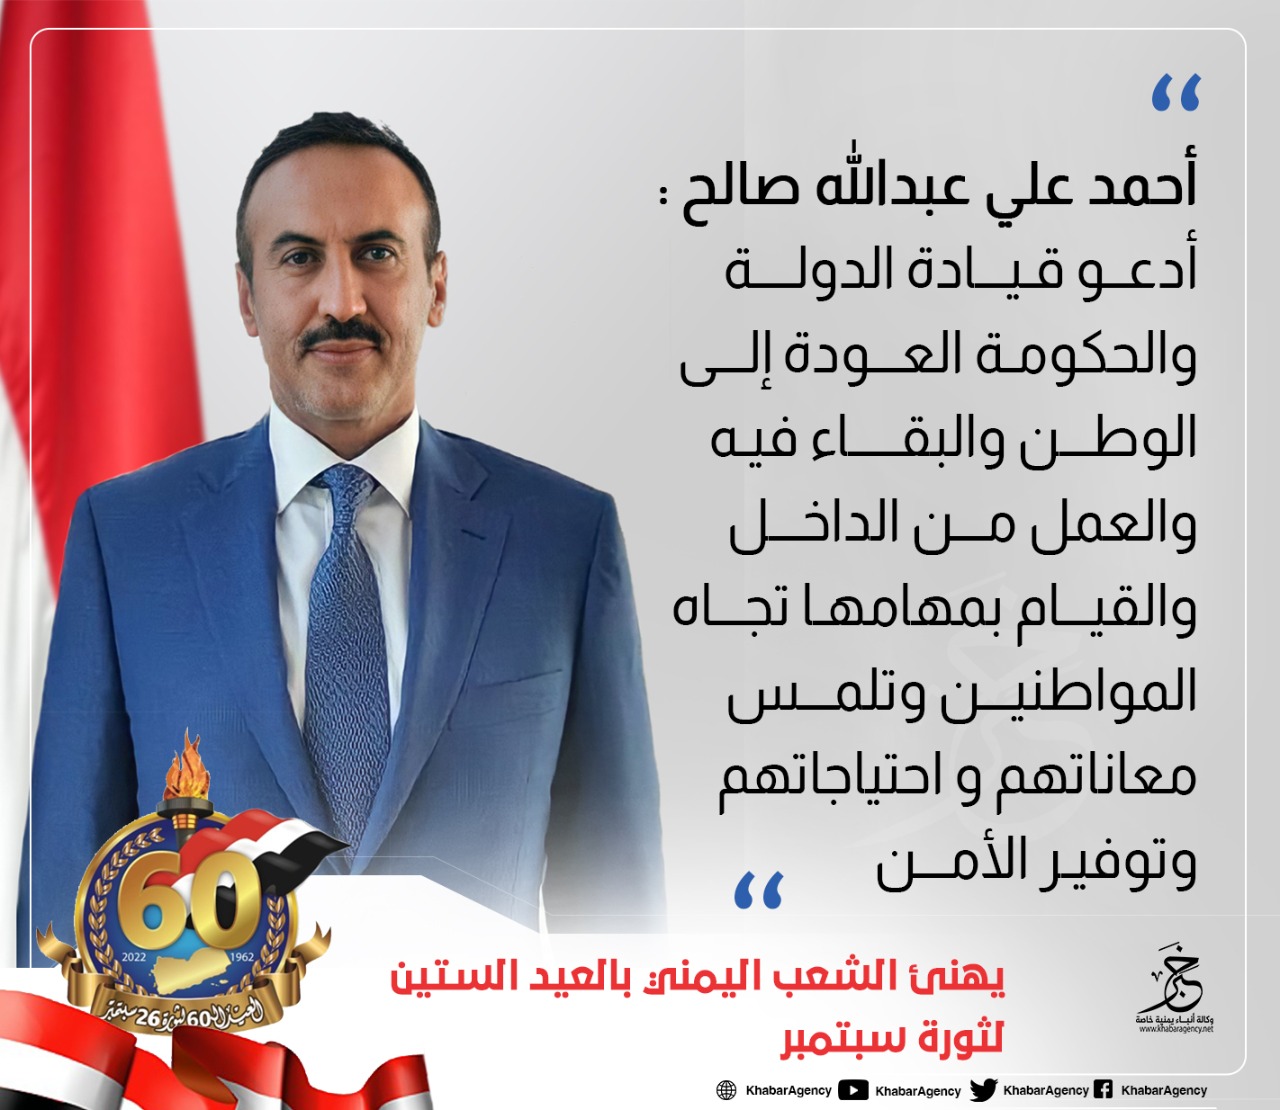 شاهد تصريح جديد لأحمد علي صالح يثير استنكار ملايين اليمنيين بما فيهم أنصاره